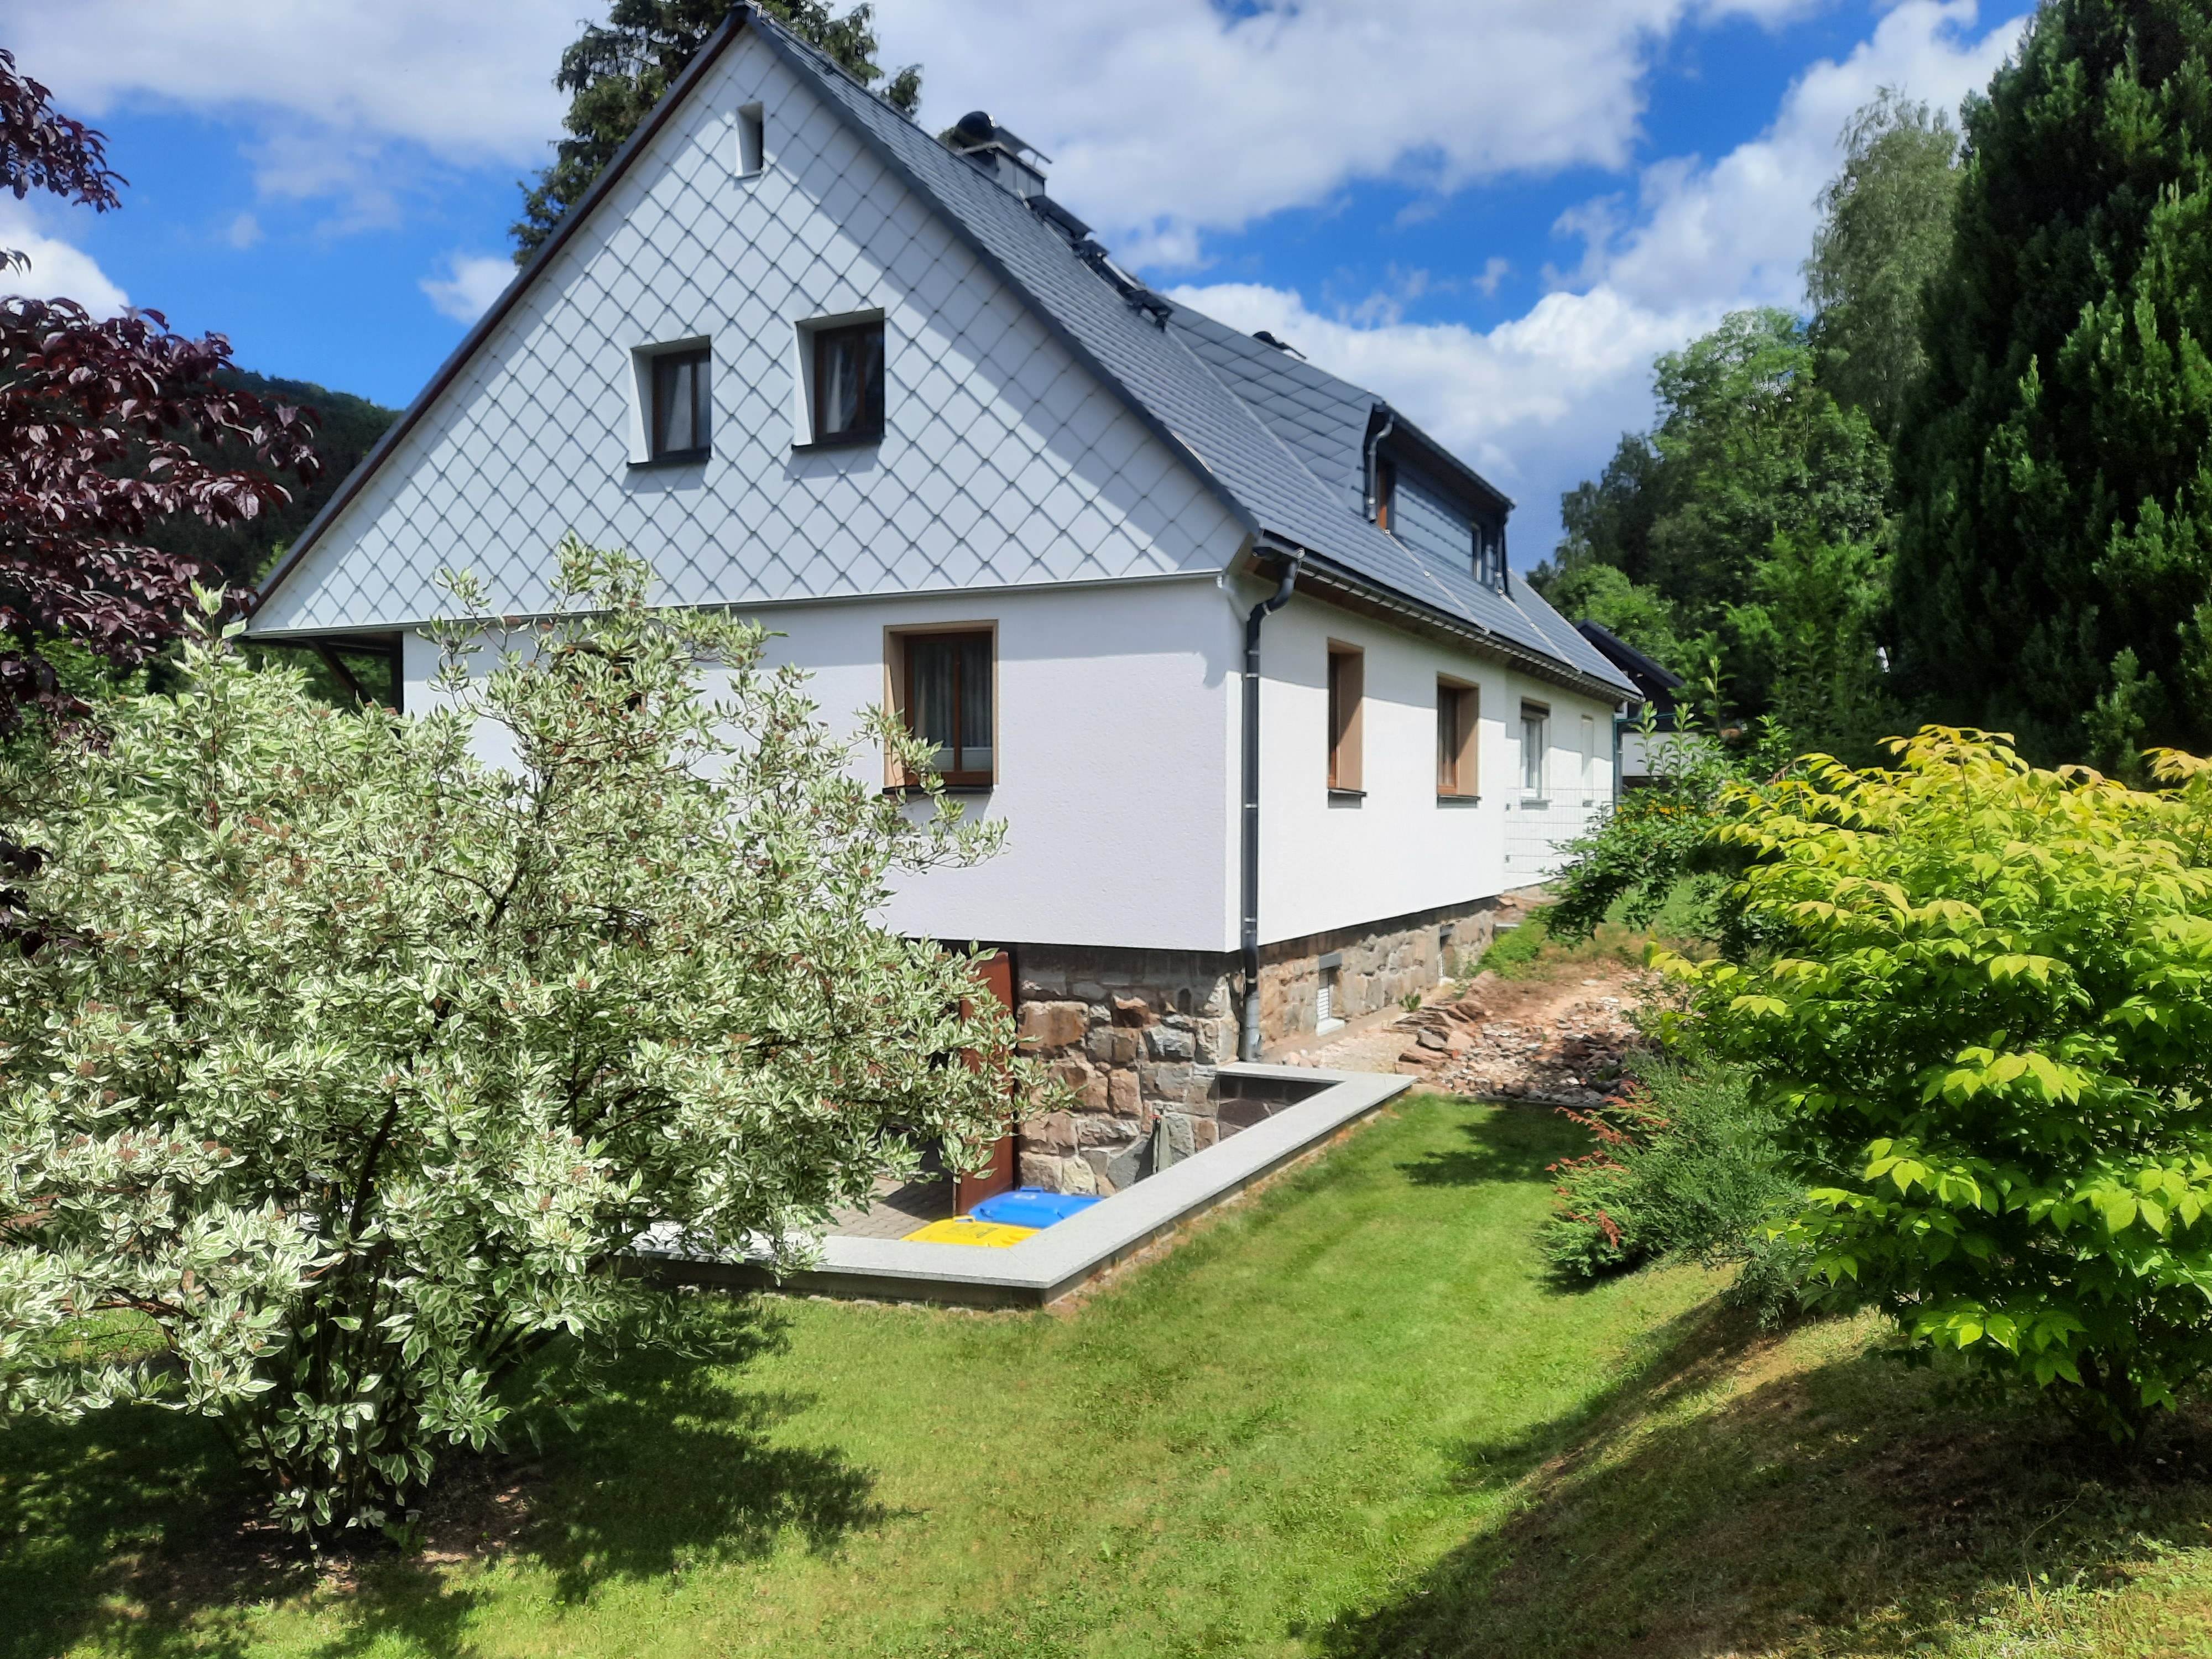  Ferienwohnung Tannenweg , Monteurunterkunft in Rechenberg-Bienenmühle-Holzhau